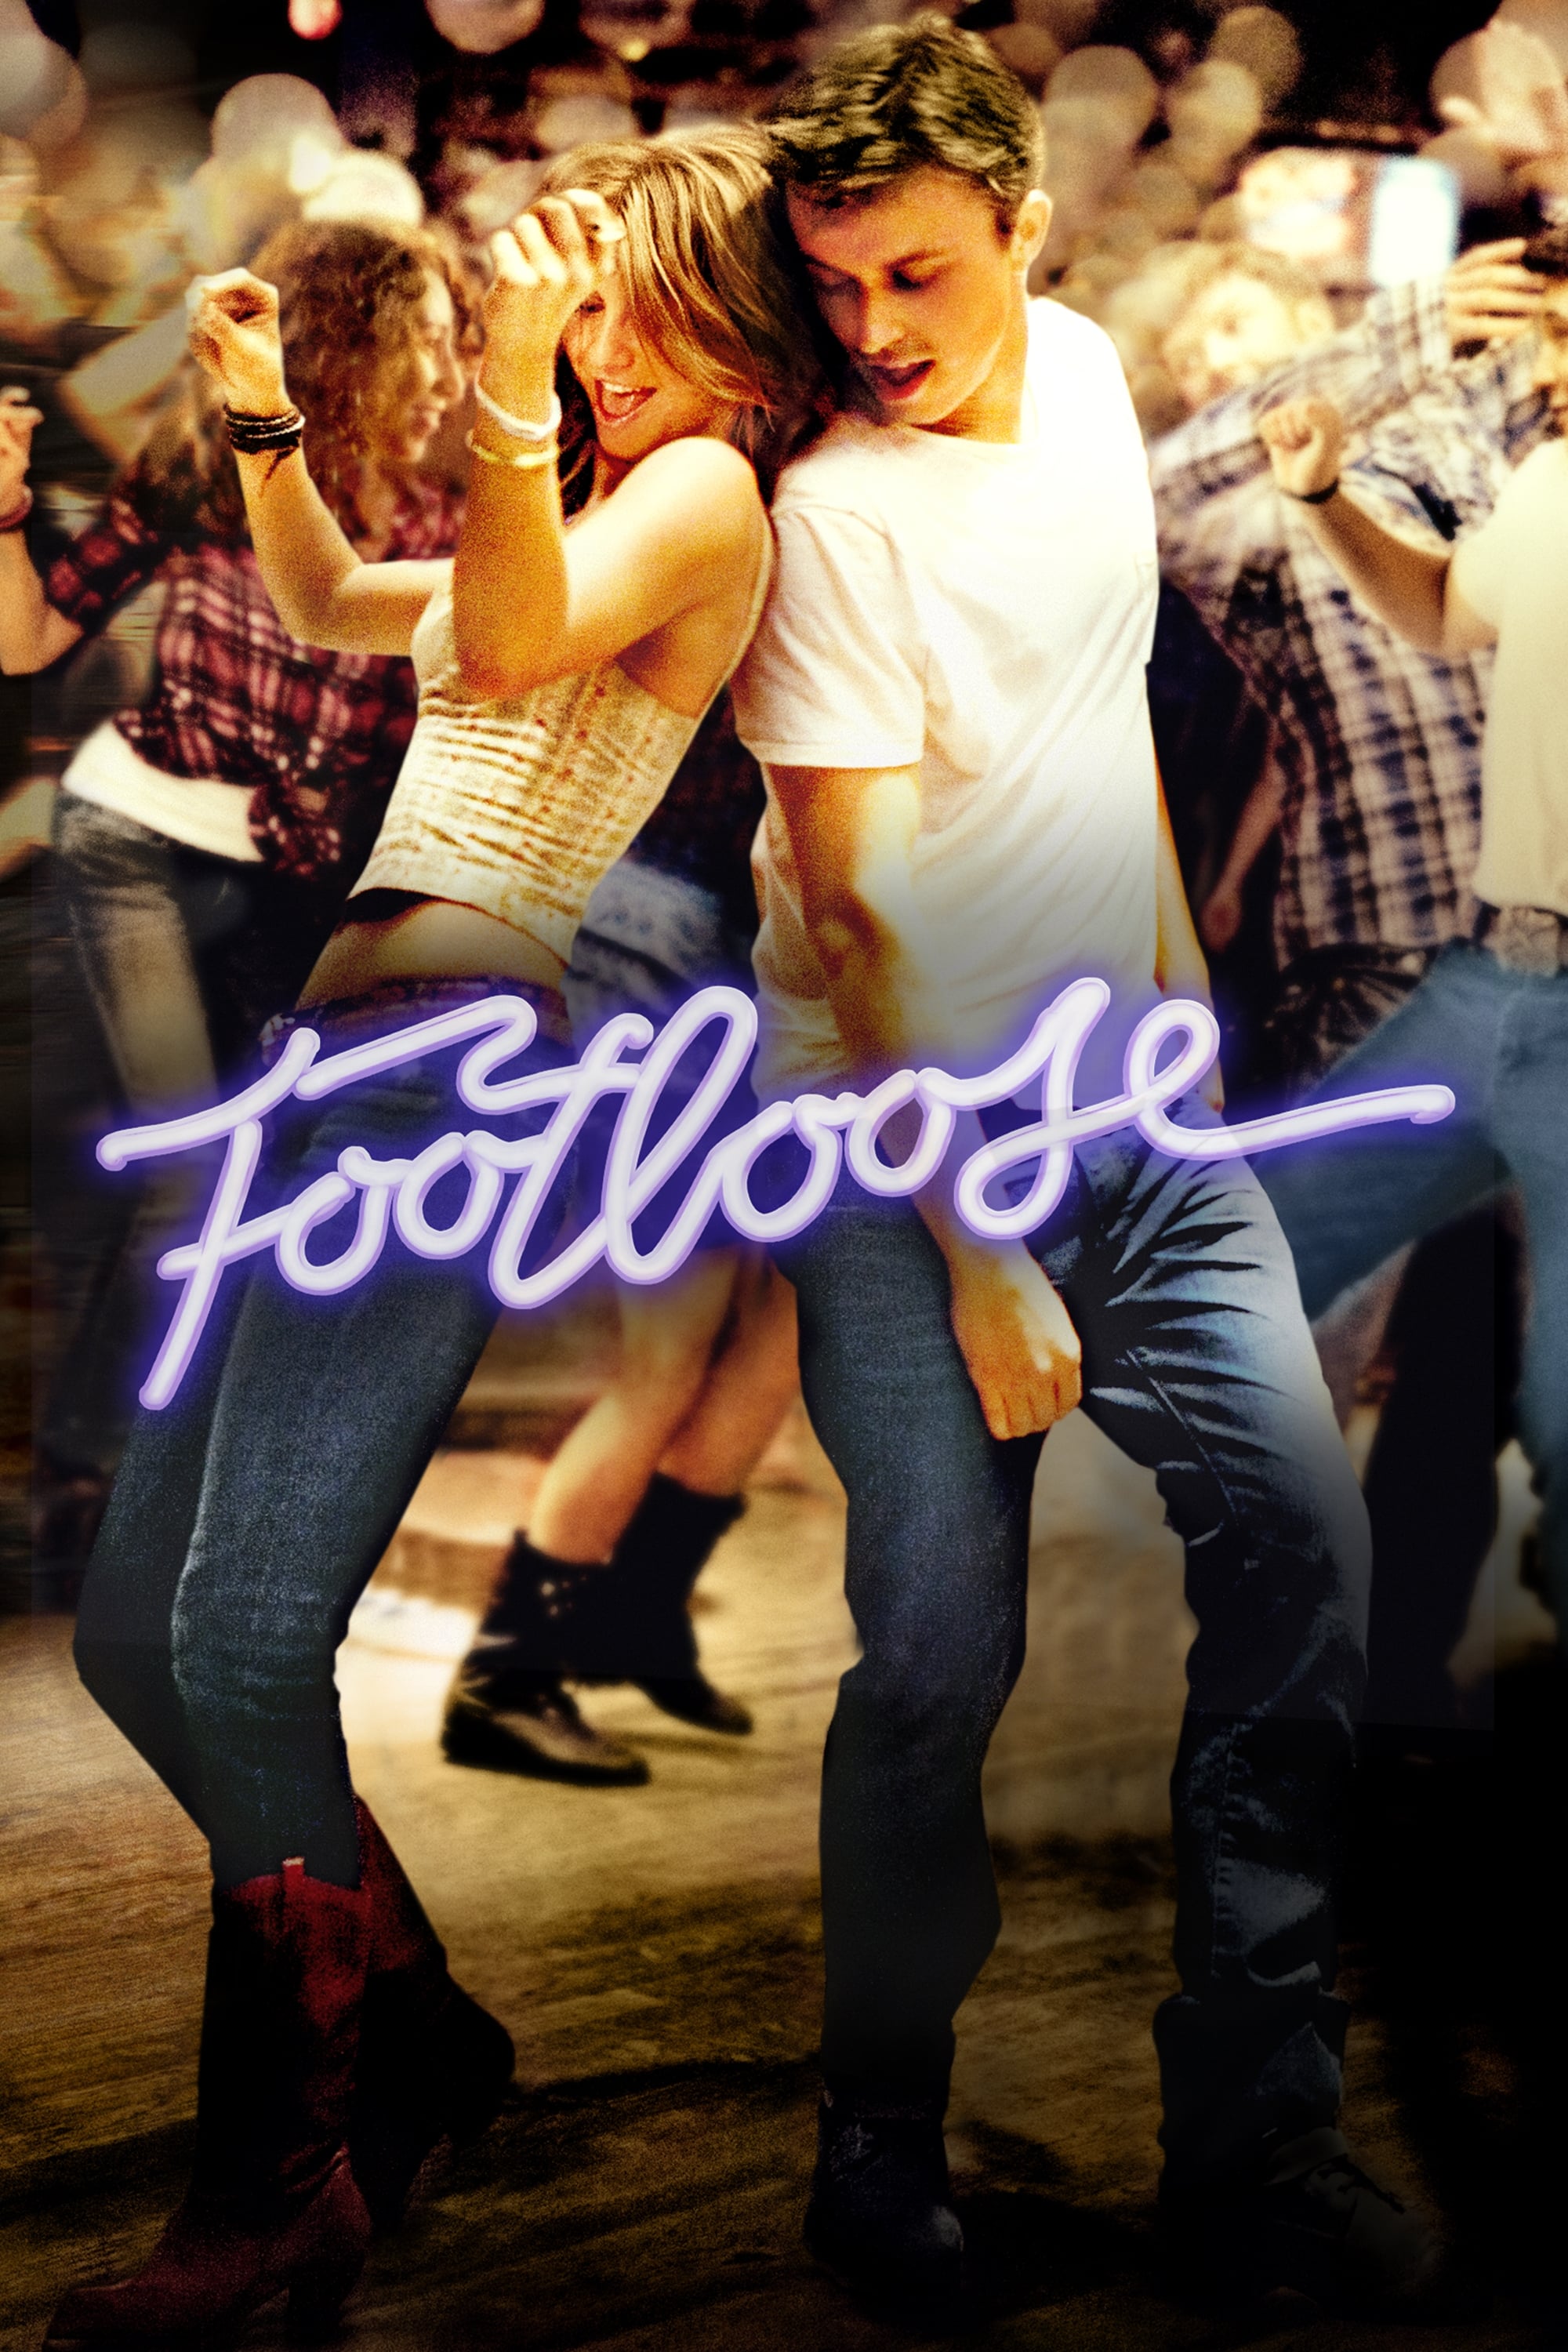 Footloose Movie poster